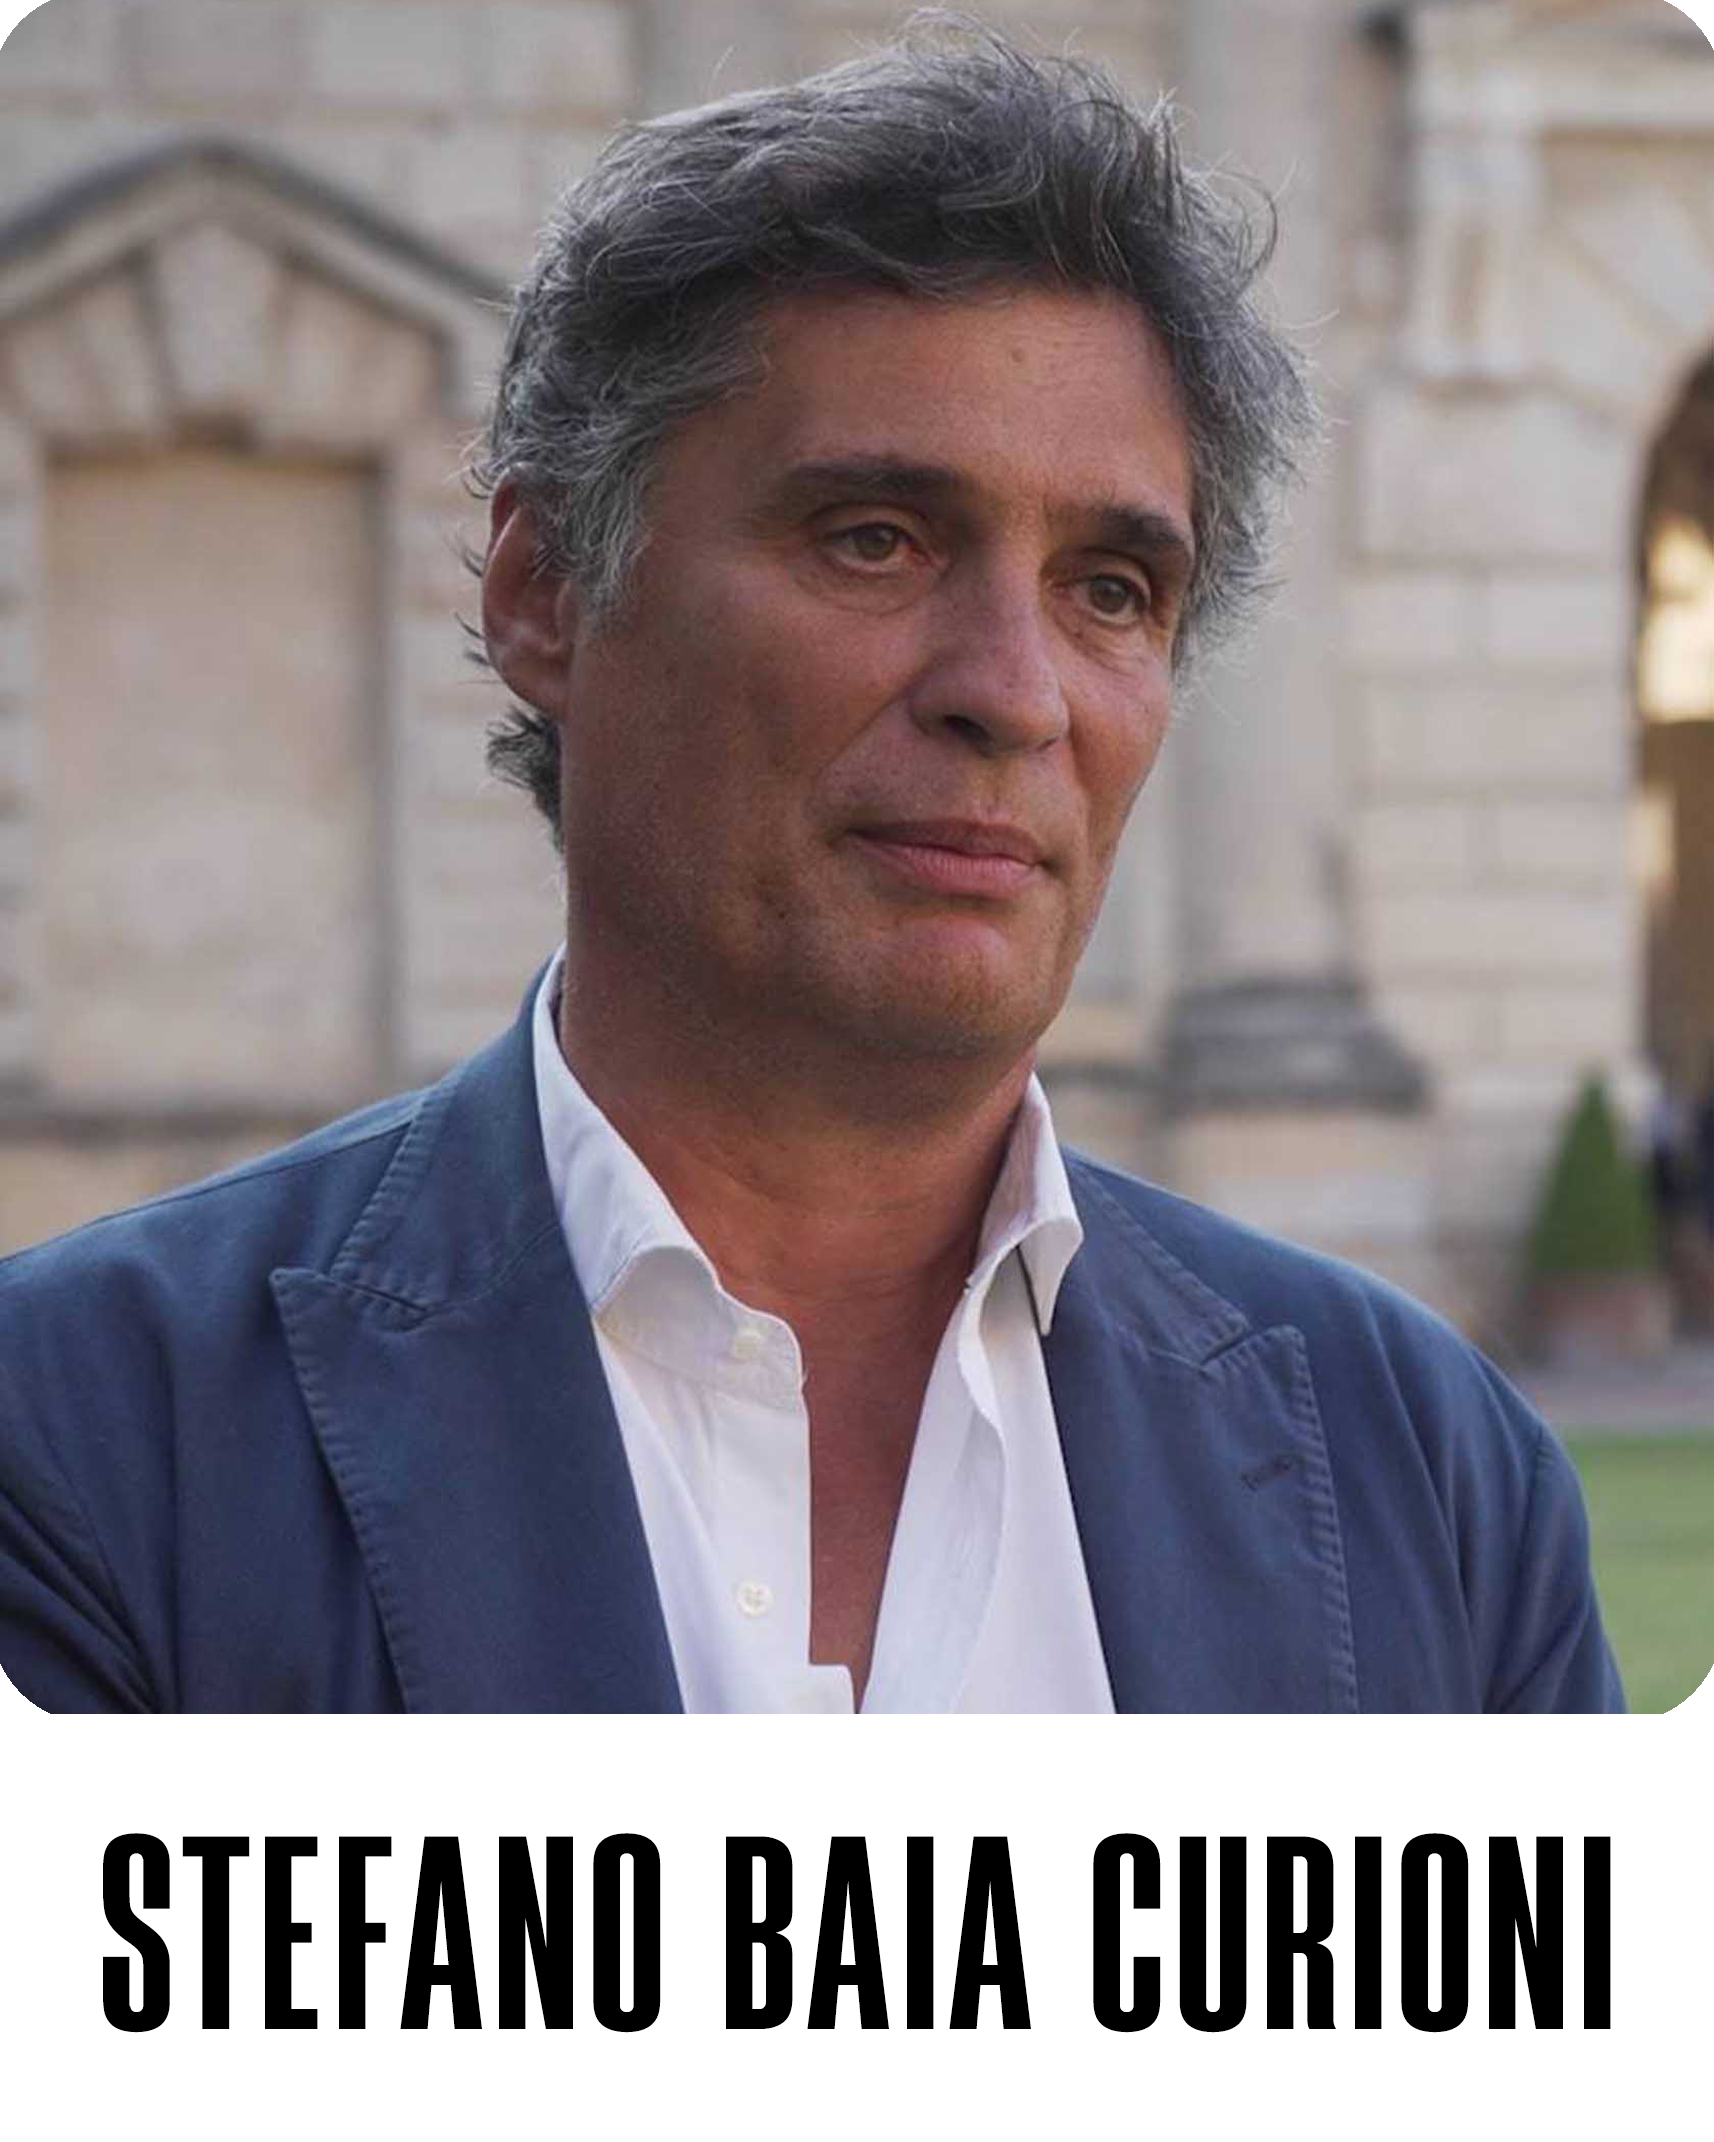 Stefano Baia Curioni